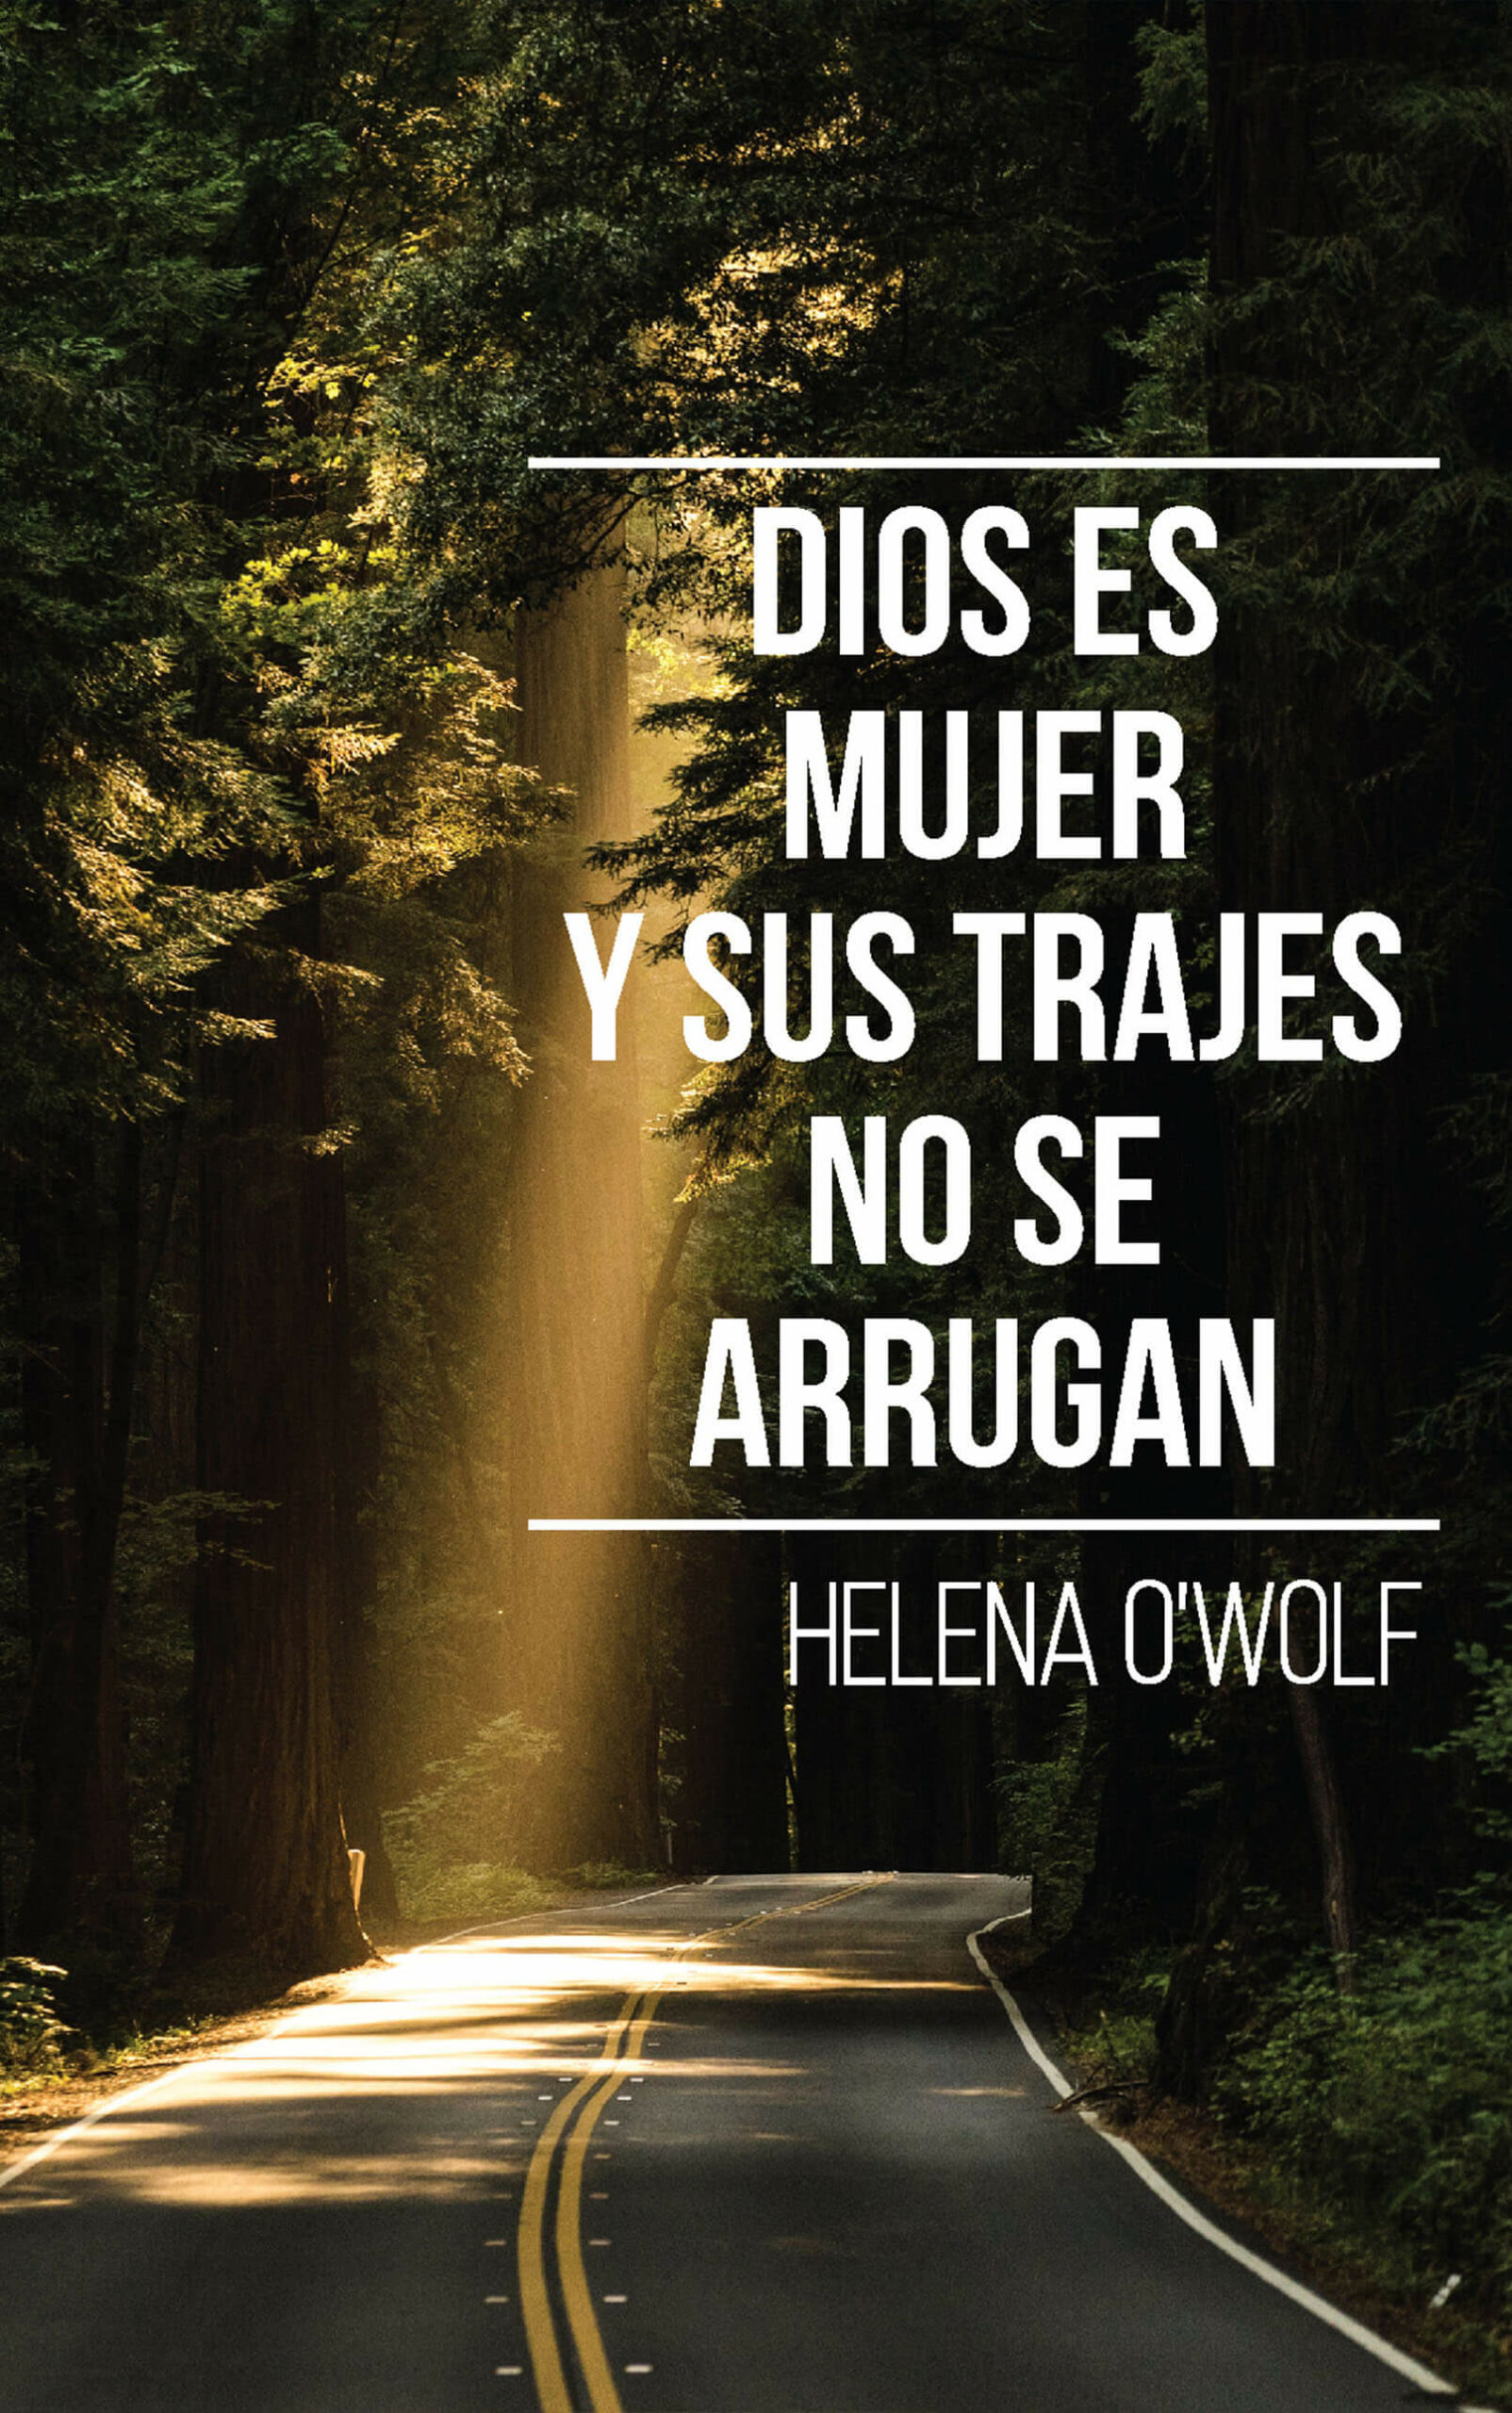 Dios es mujer y sus trajes no se arrugan, de Helena O’Wolf